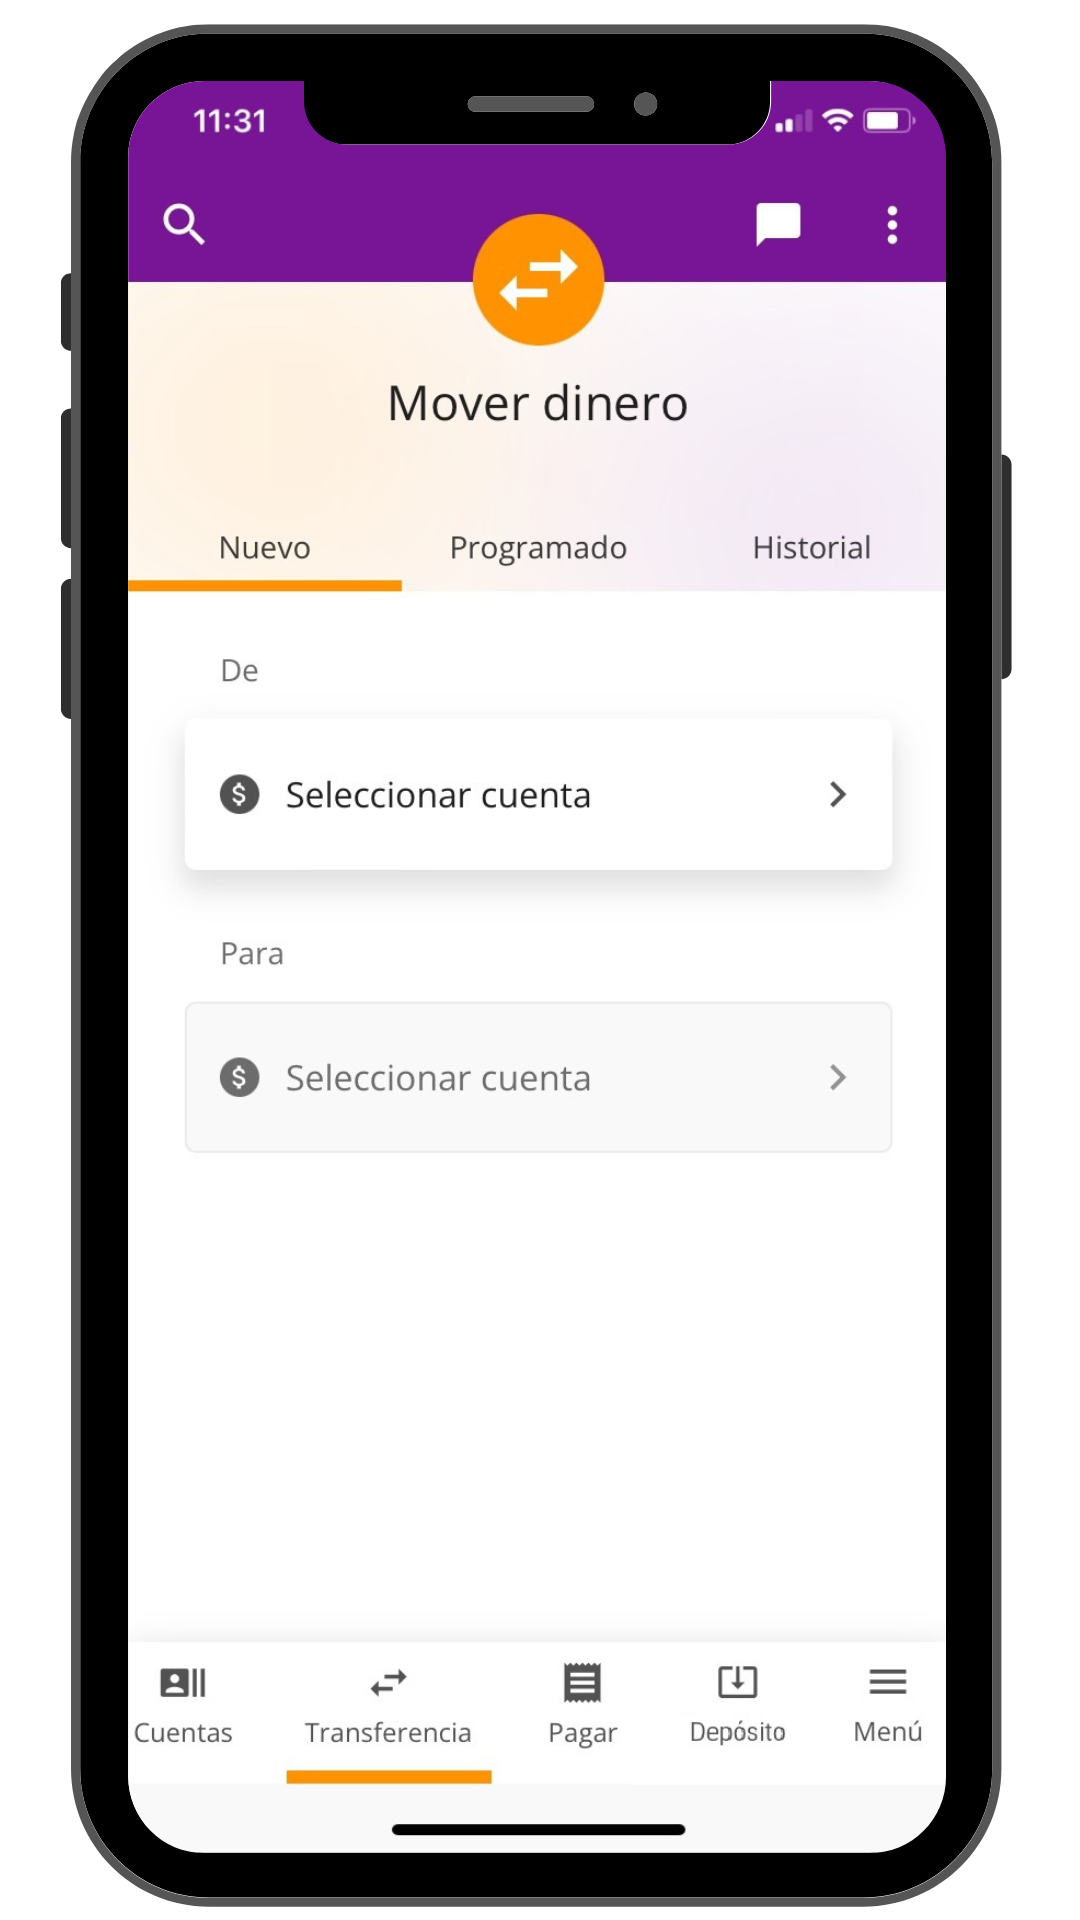 Sneak peek of Spanish version of upgraded mobile app